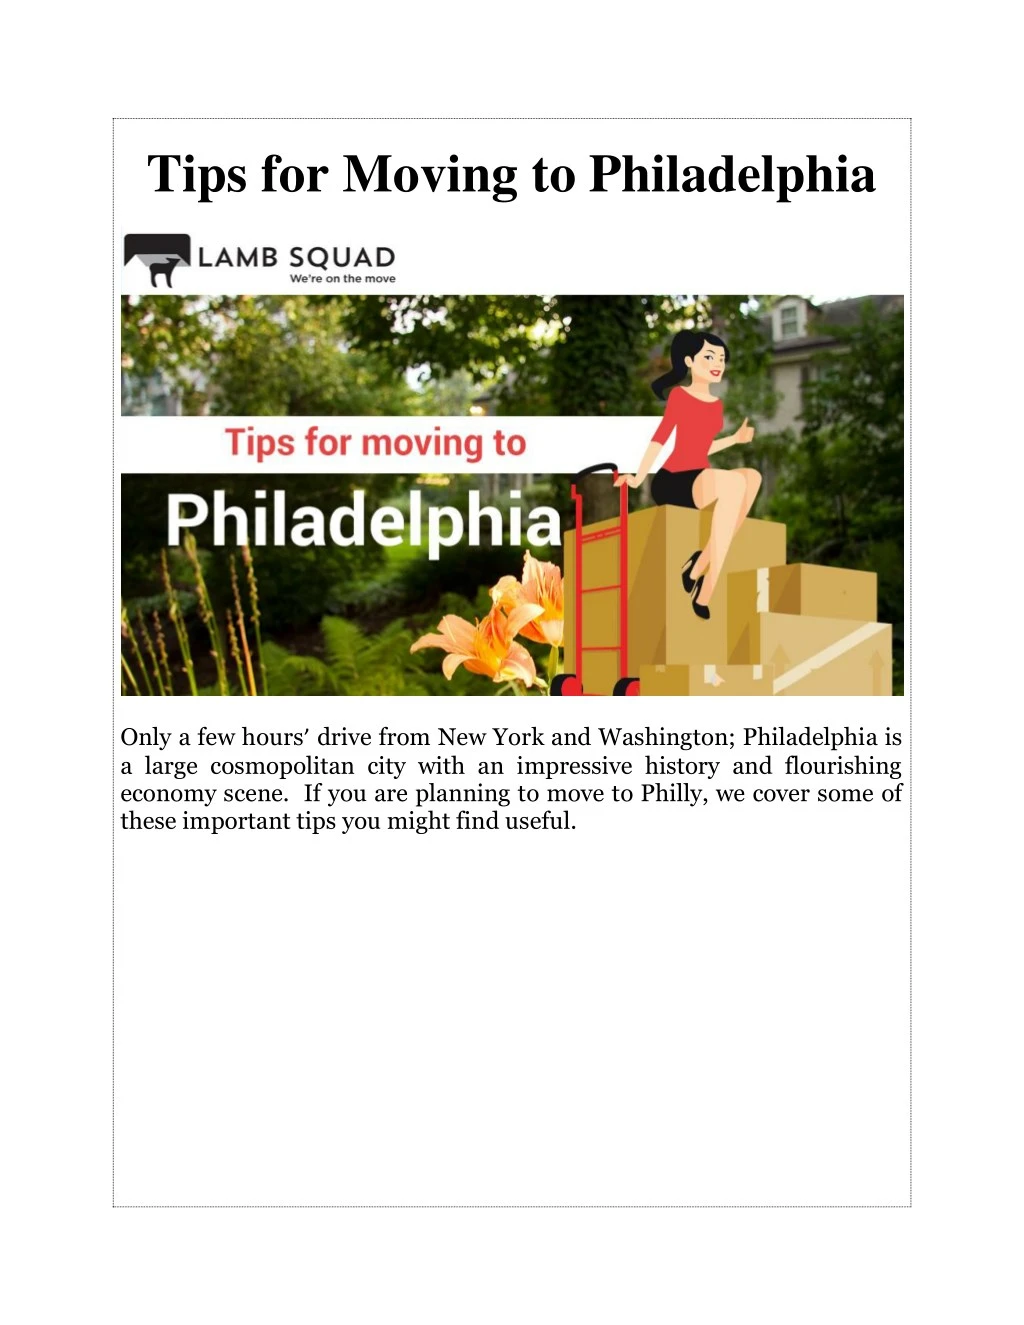 tips for moving to philadelphia